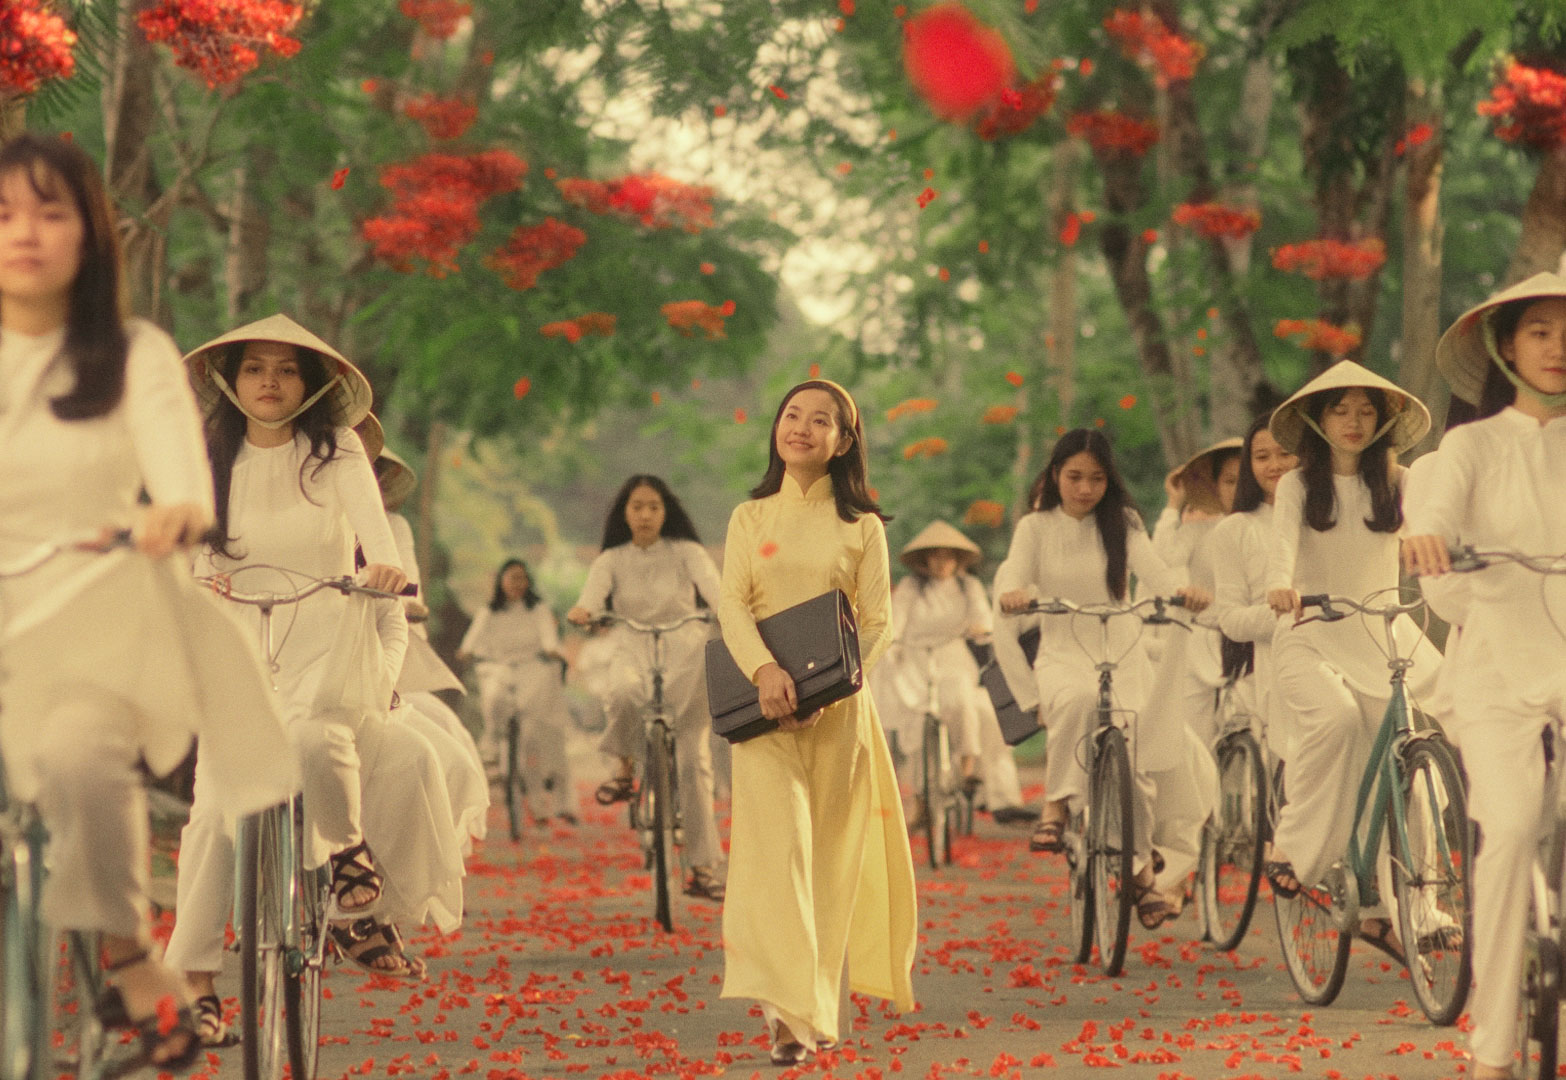 'Em và Trịnh' - một tiến thoái lưỡng nan của các nhà làm phim trẻ